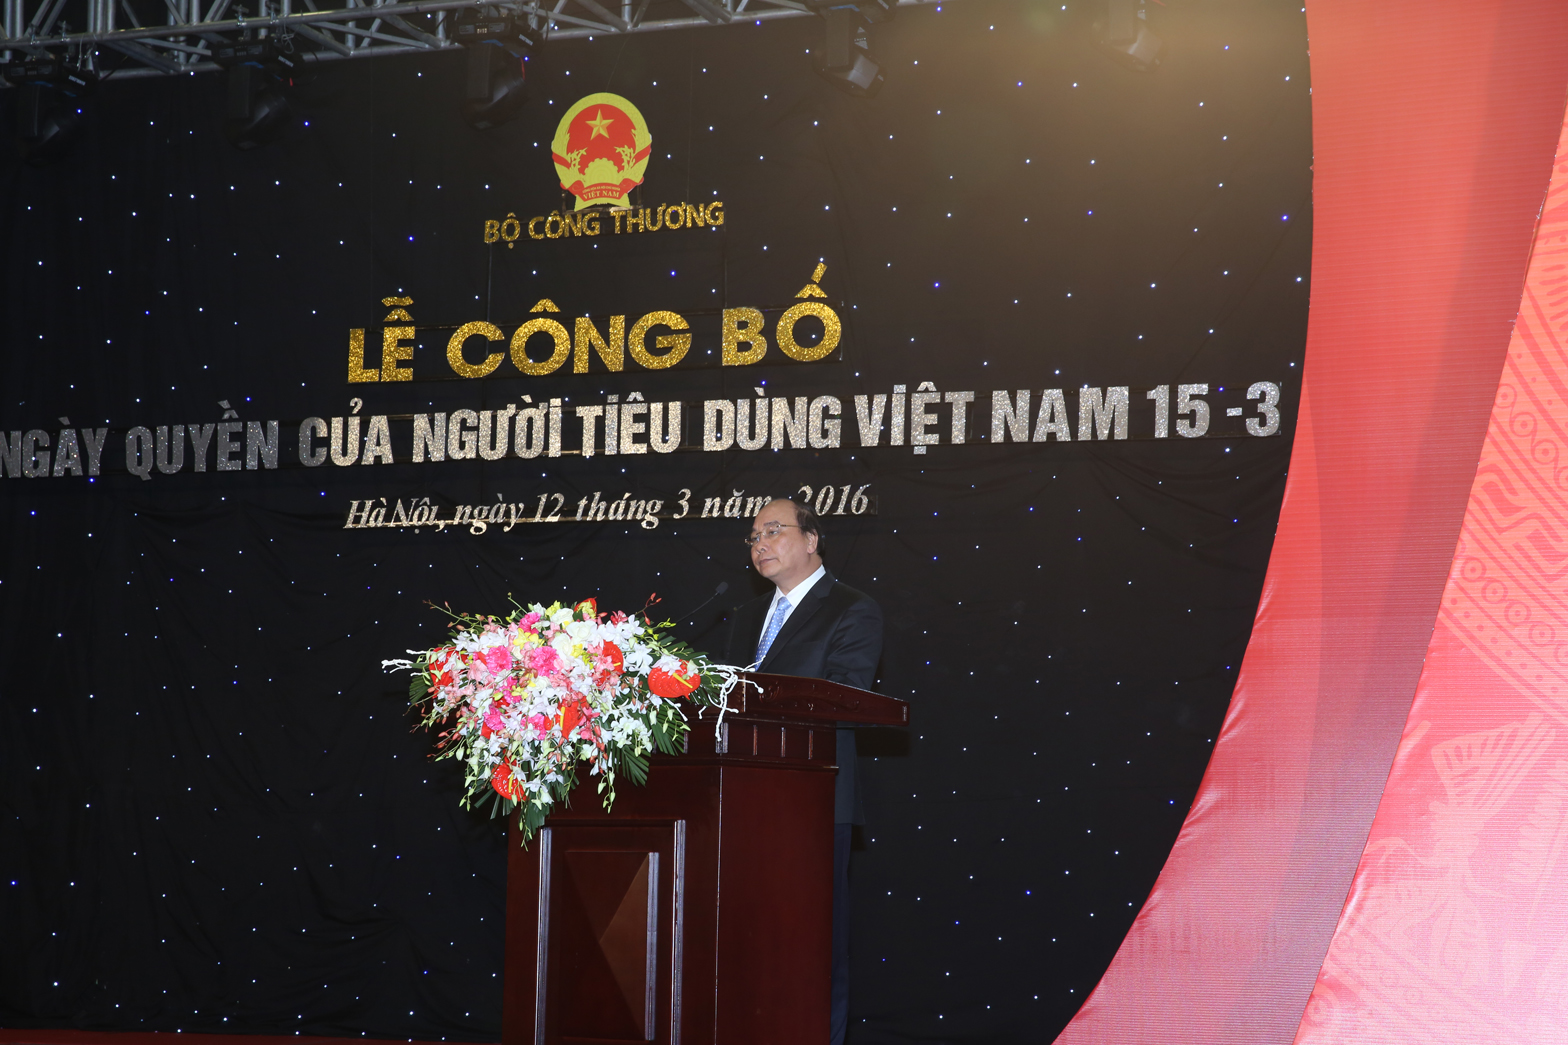 Phó Thủ tướng Nguyễn Xuân Phúc kêu gọi hành động vì quyền của người tiêu dùng. Ảnh: VGP/Lê Sơn